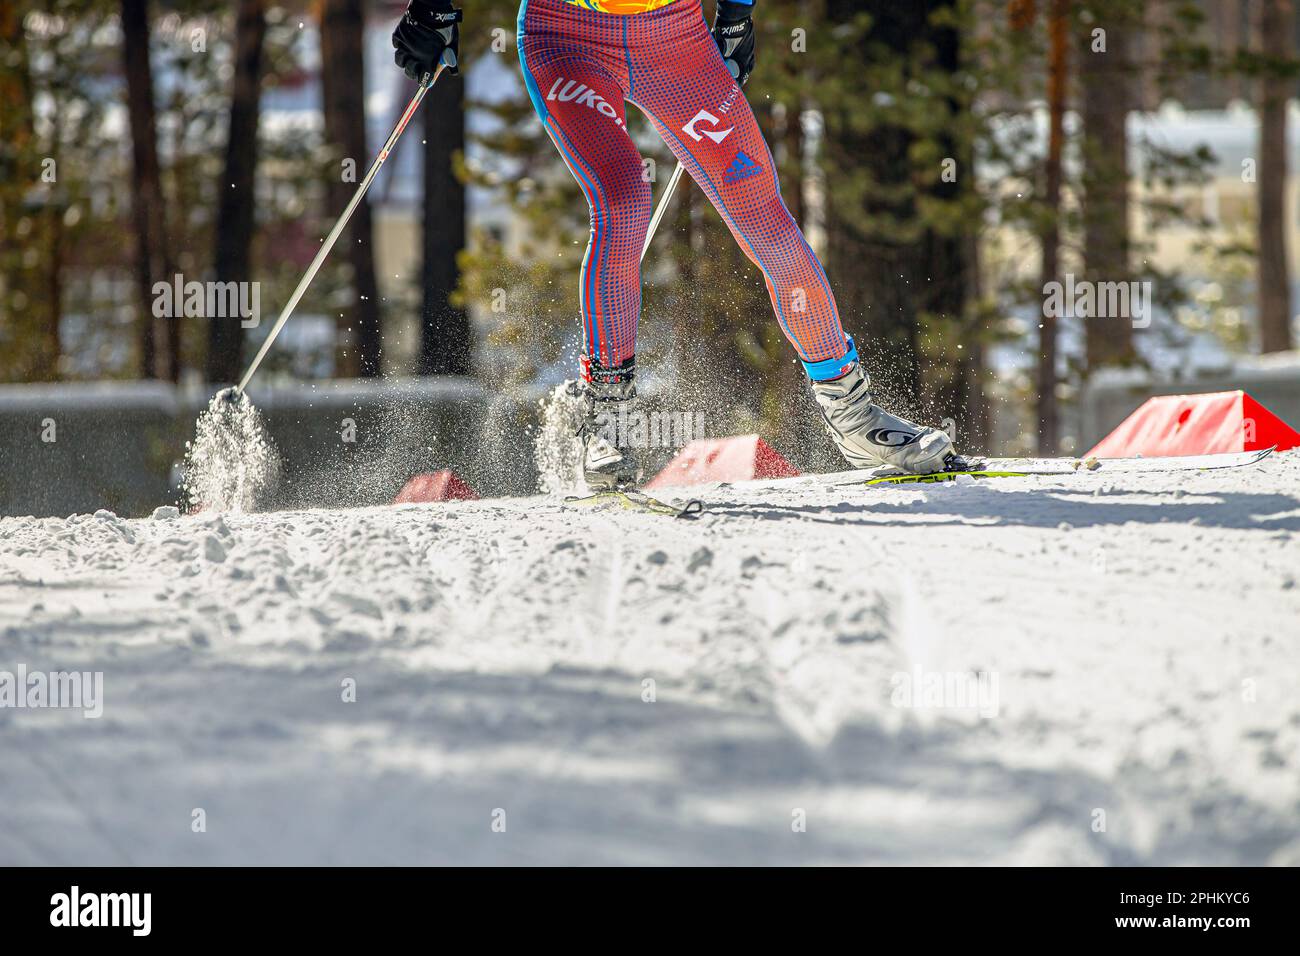 Athlète skieur en ski de fond, ski de course Fischer, bottes de ski  Salomon, combinaison de peau Adidas avec le parrainage Lukoil, HuTag frid  TAG dans les jambes Photo Stock - Alamy